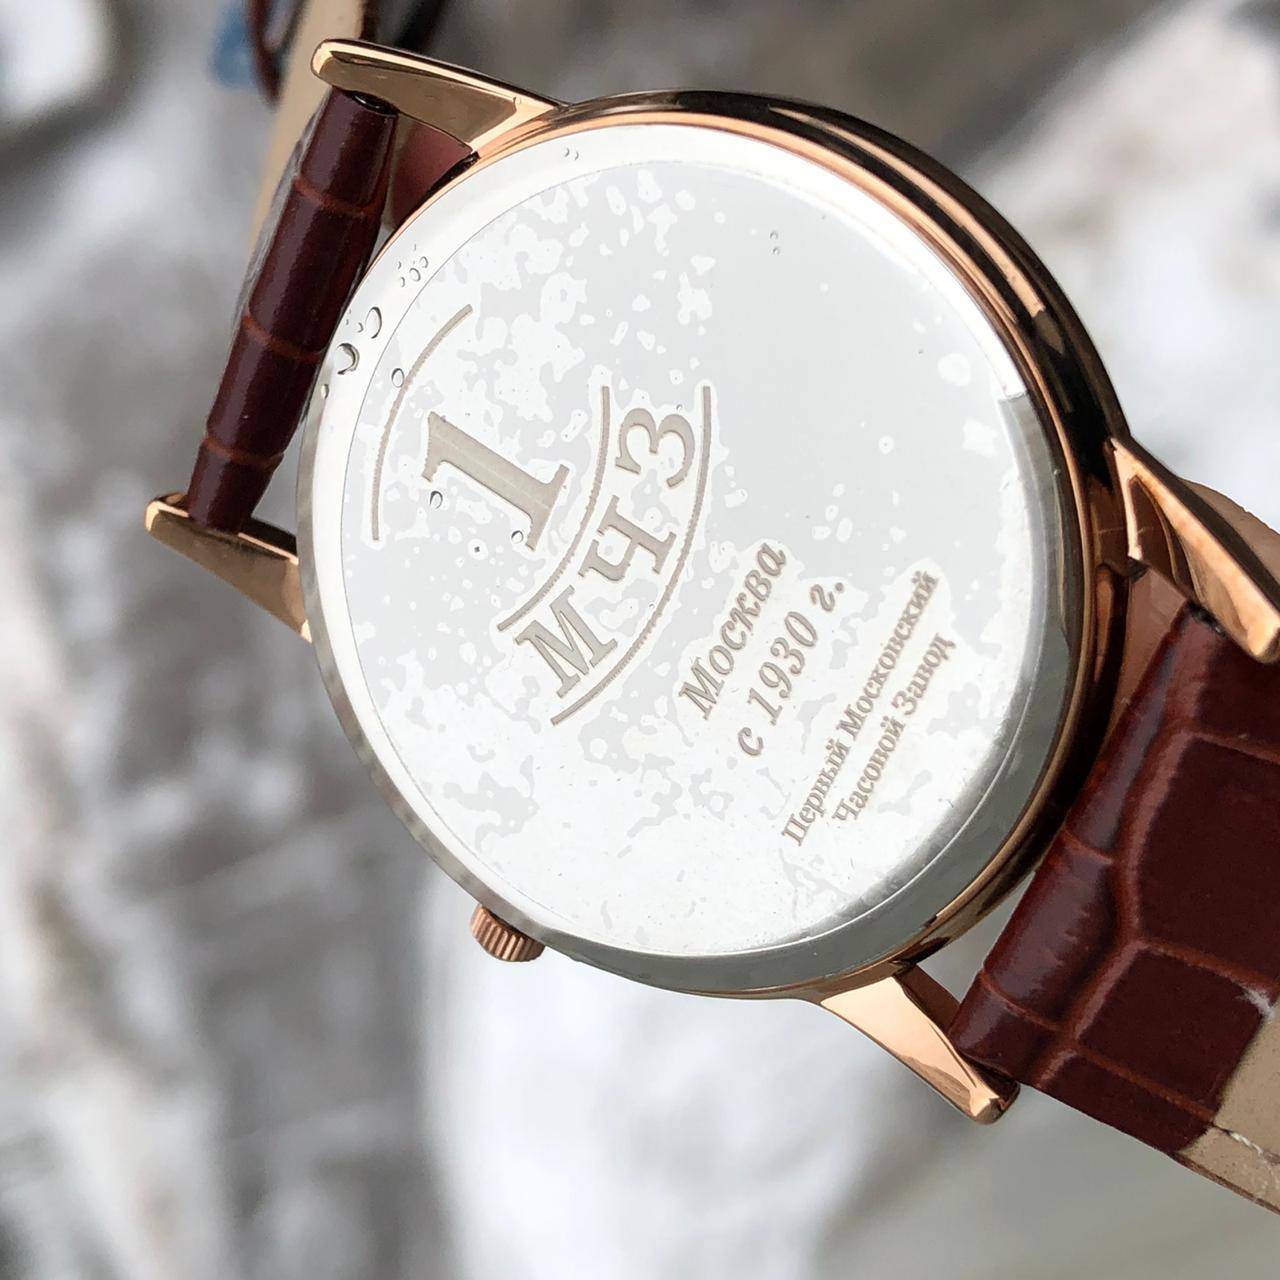 Đồng hồ Poljot phiên bản kỷ niệm nhà máy đồng hồ đầu tiên 5129121P